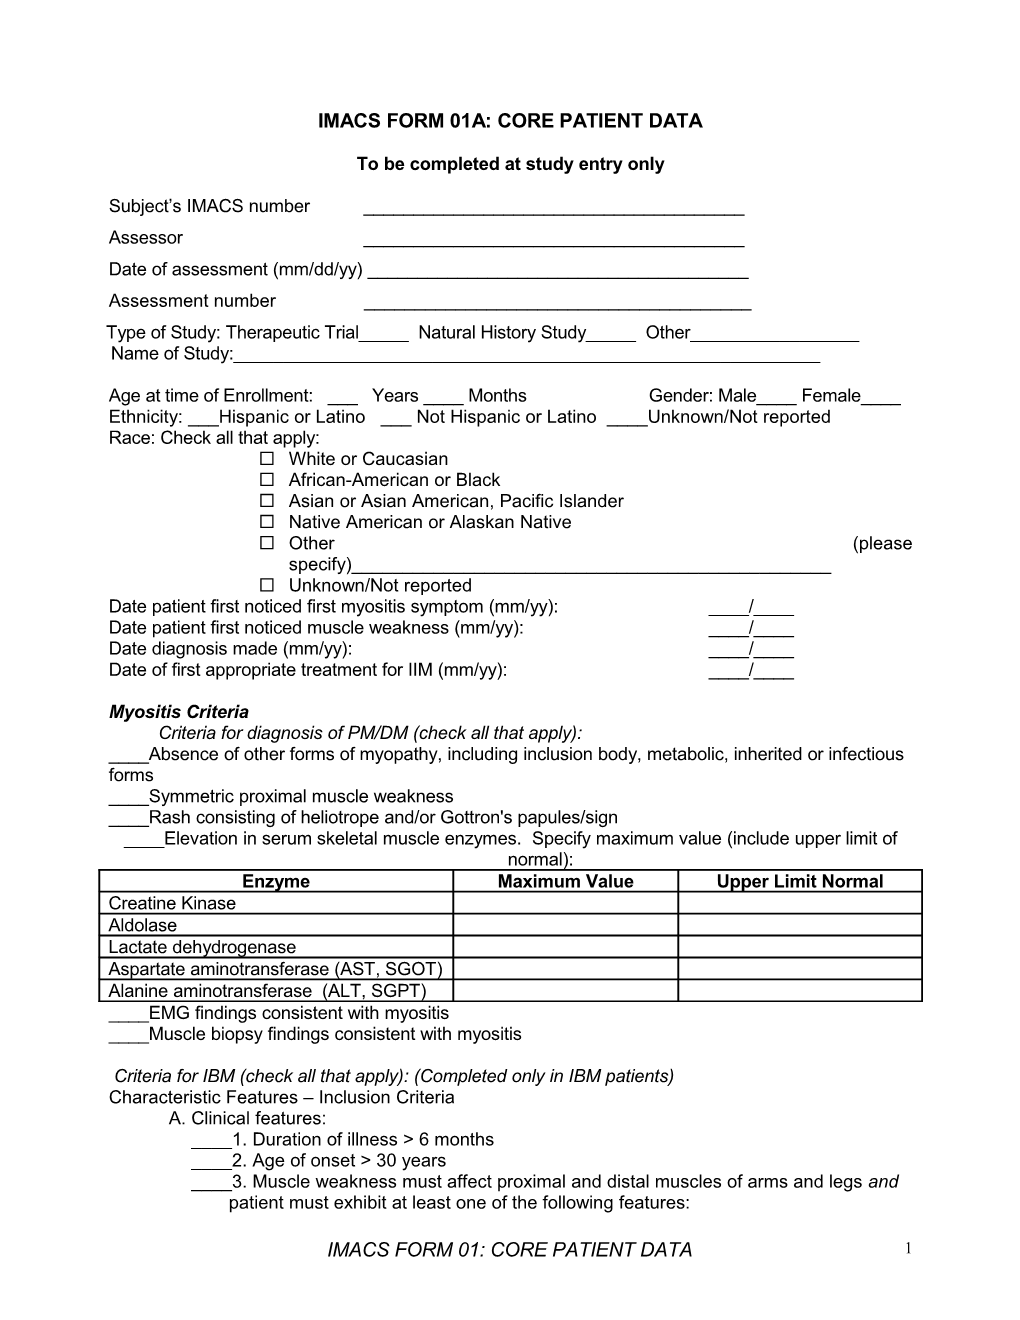 IMACS Form 01A: Core Patient Data